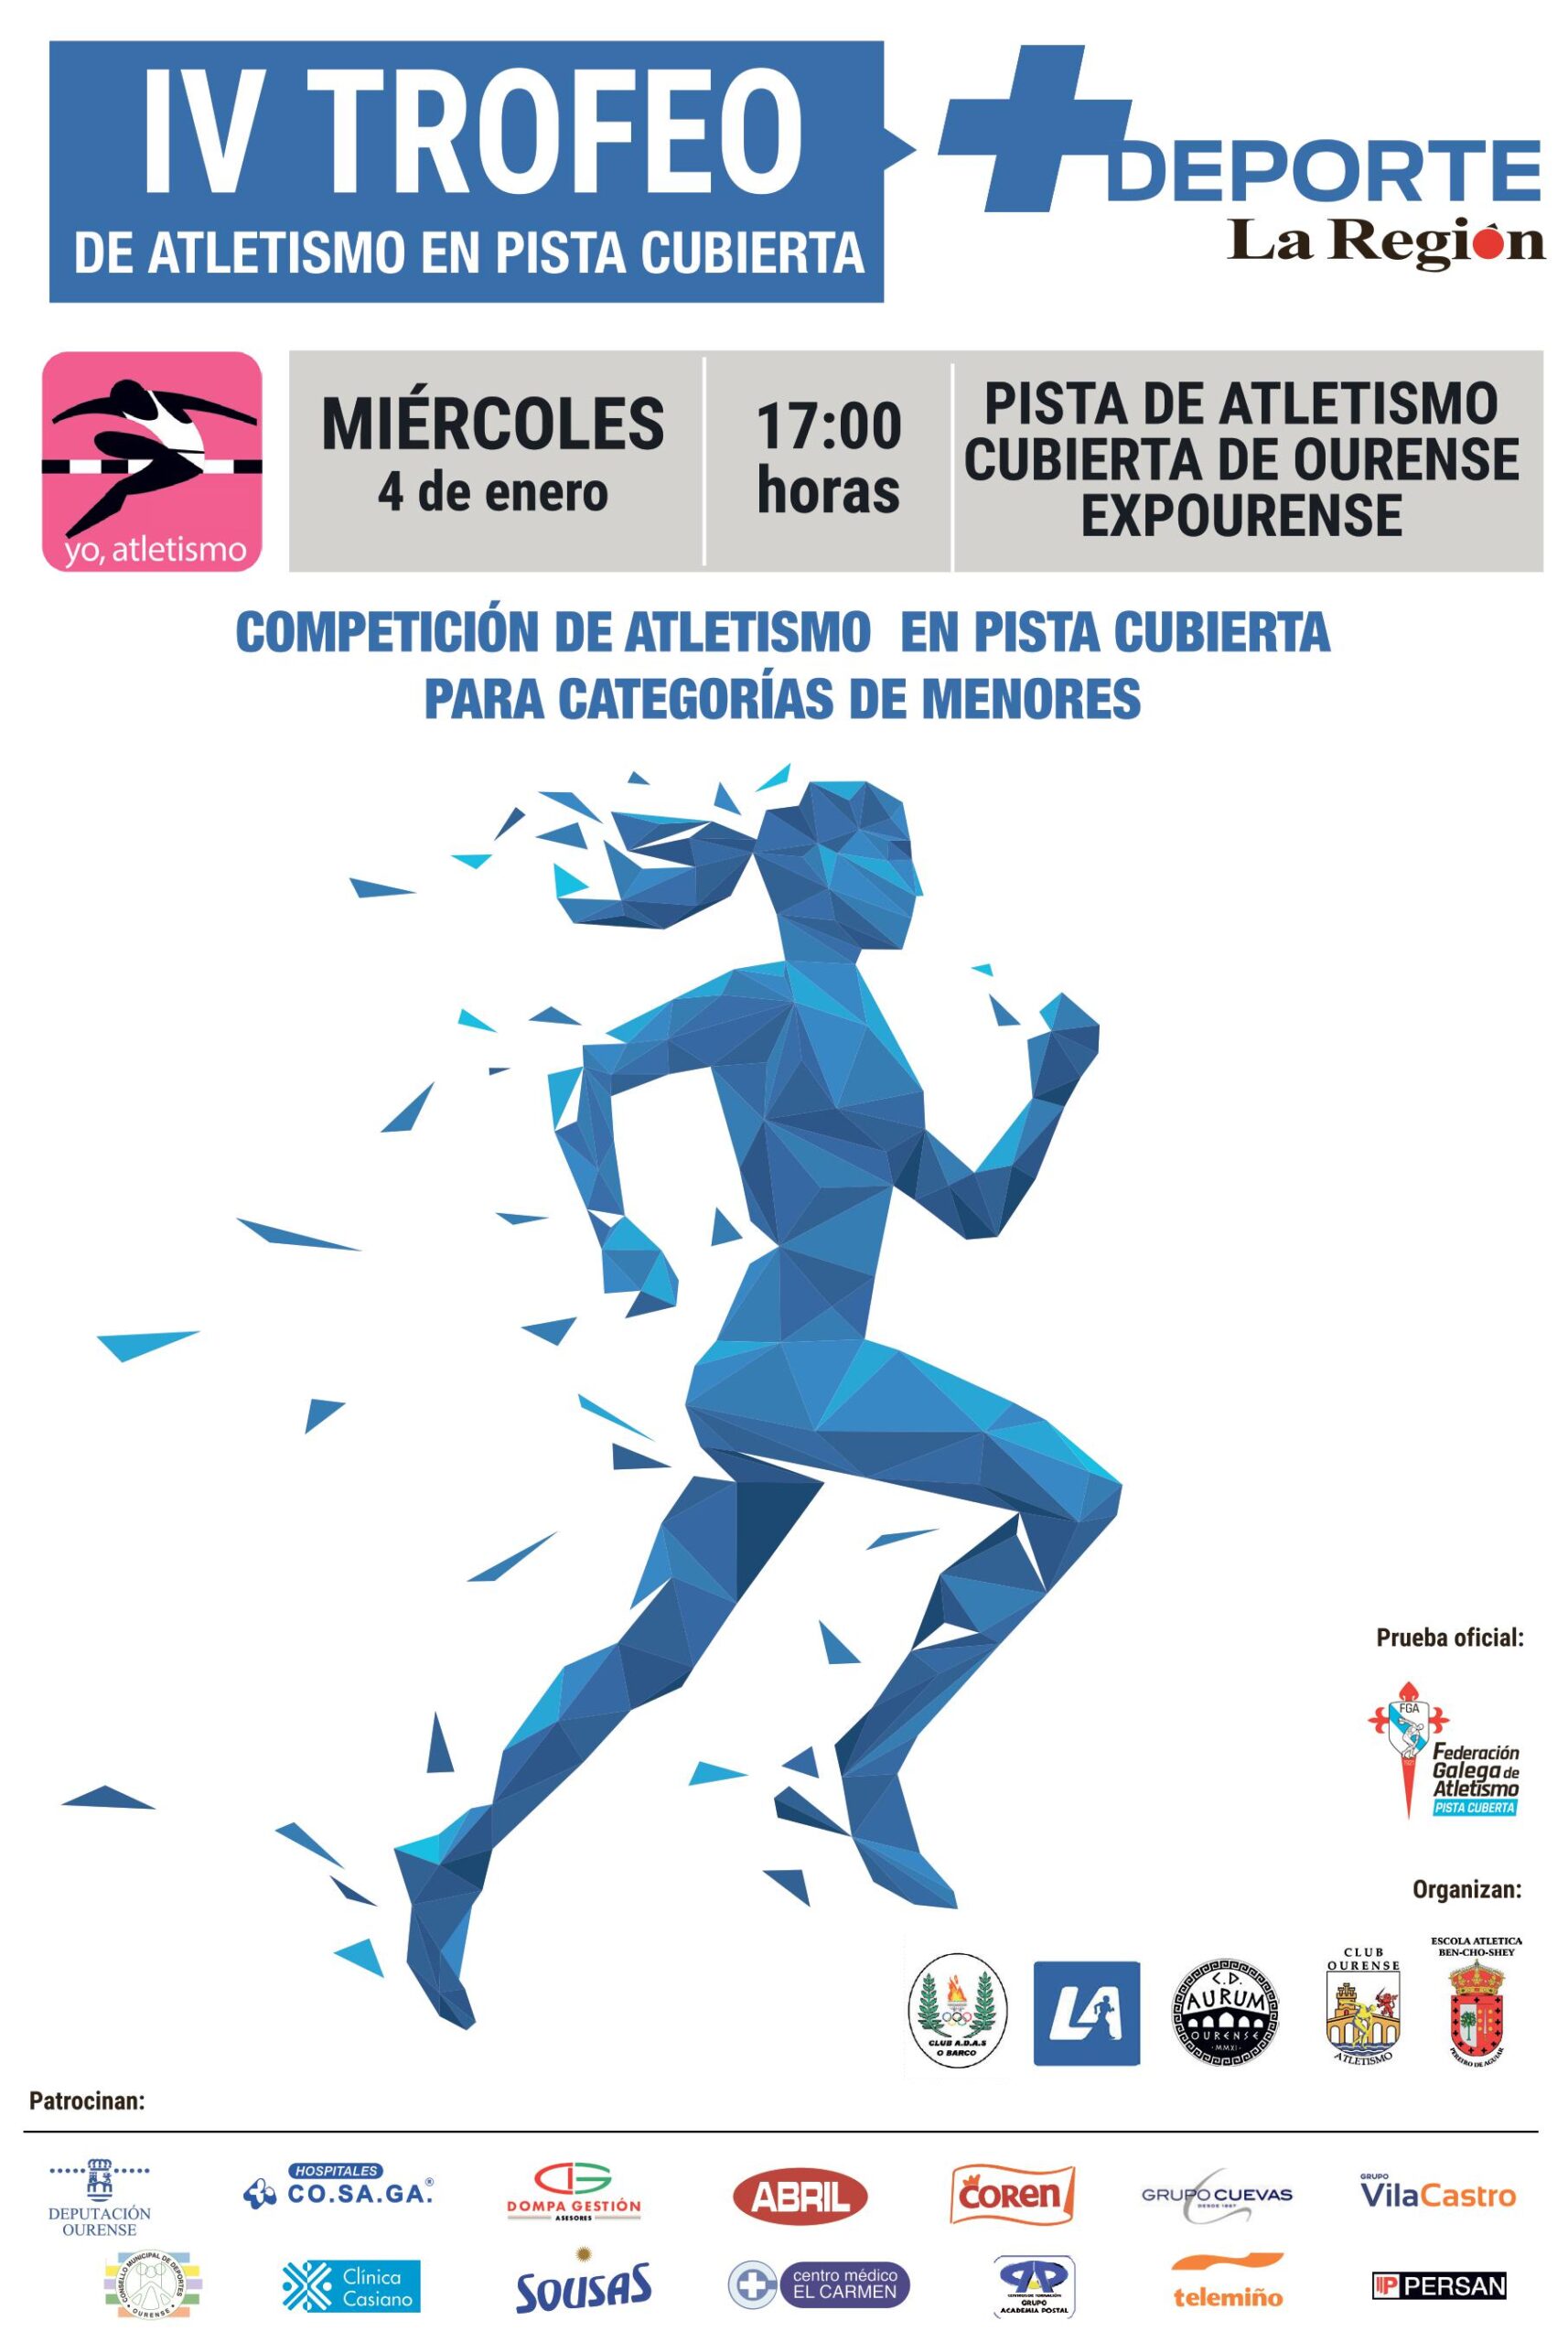 IV Trofeo + Deporte La Región de Atletismo en Pista Cuberta 2023